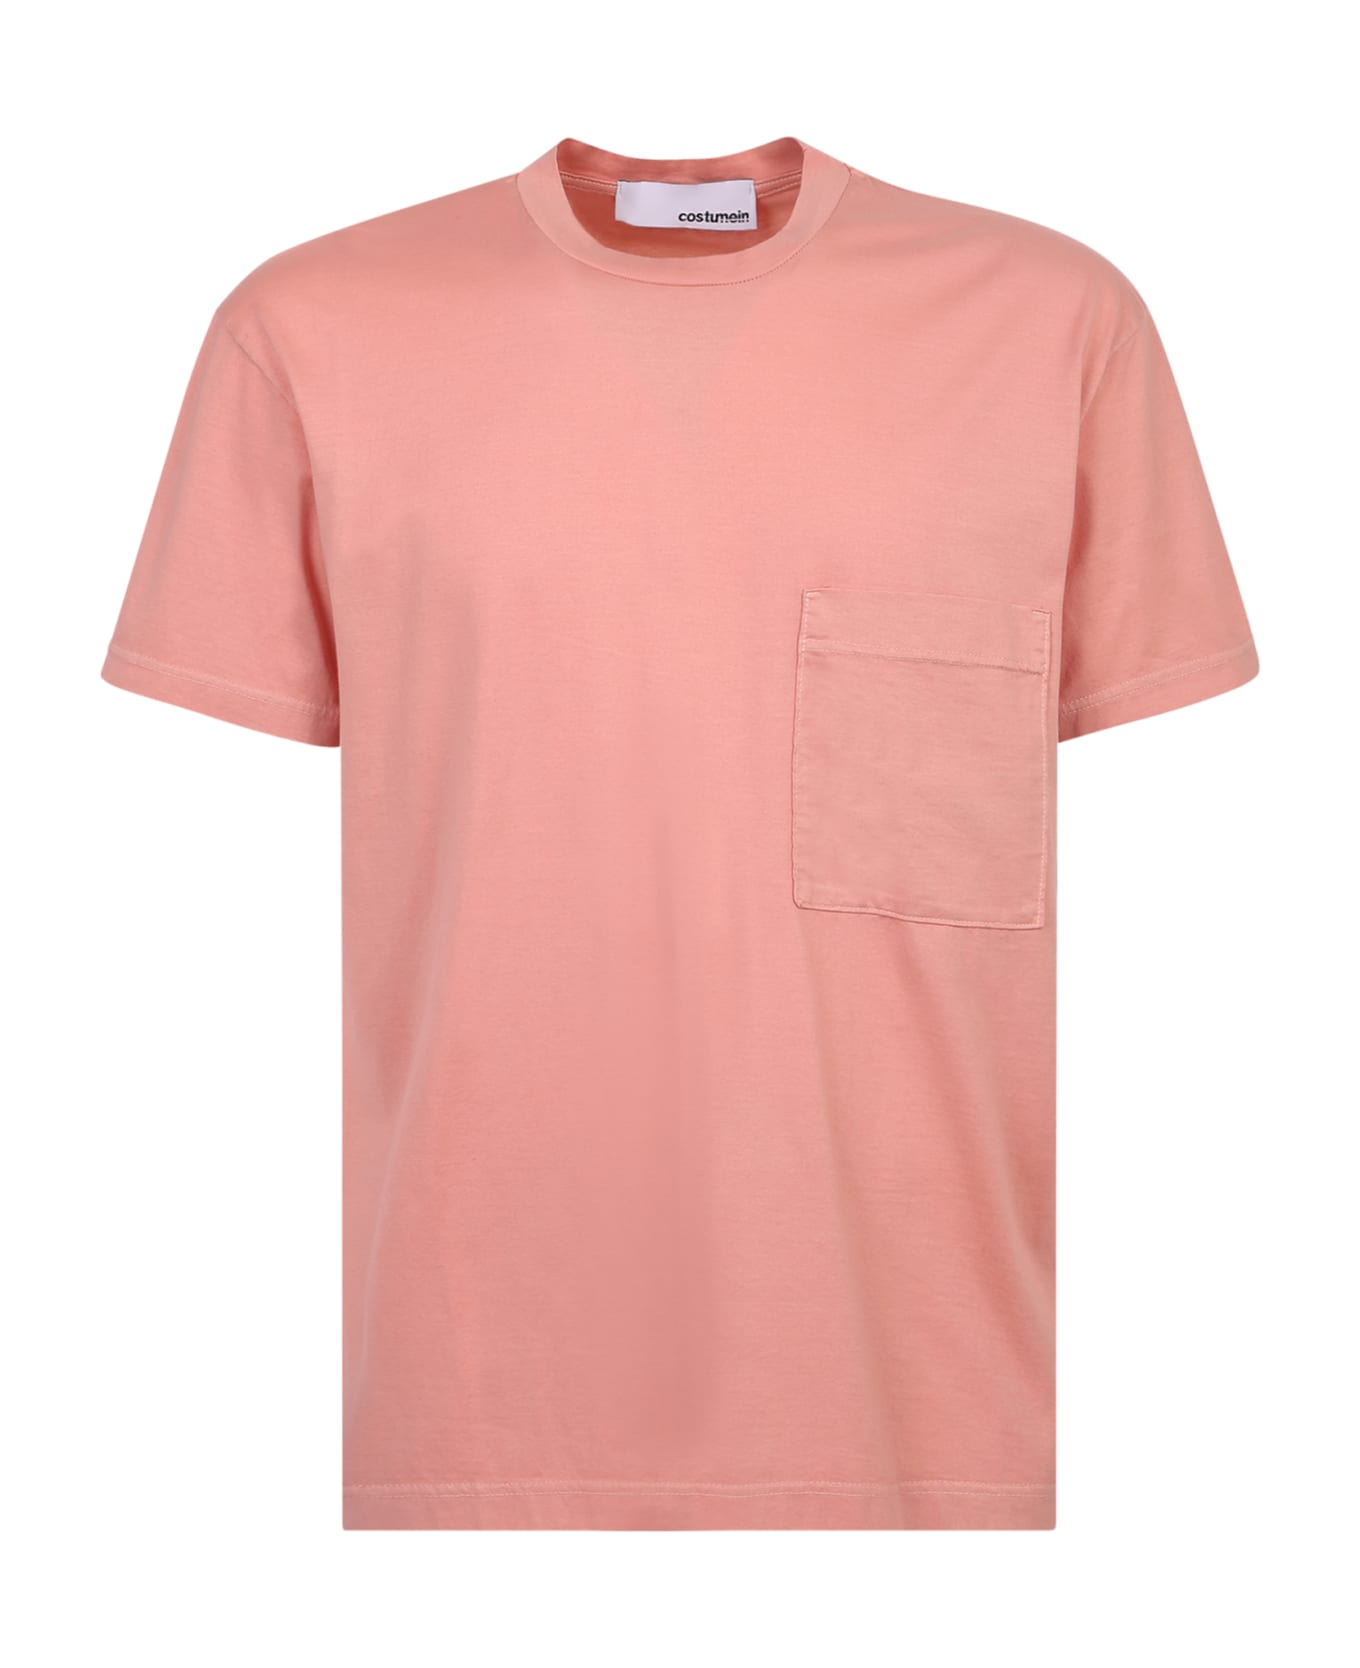 Giuseppe di Morabito William Cotton T-shirt - Pink シャツ